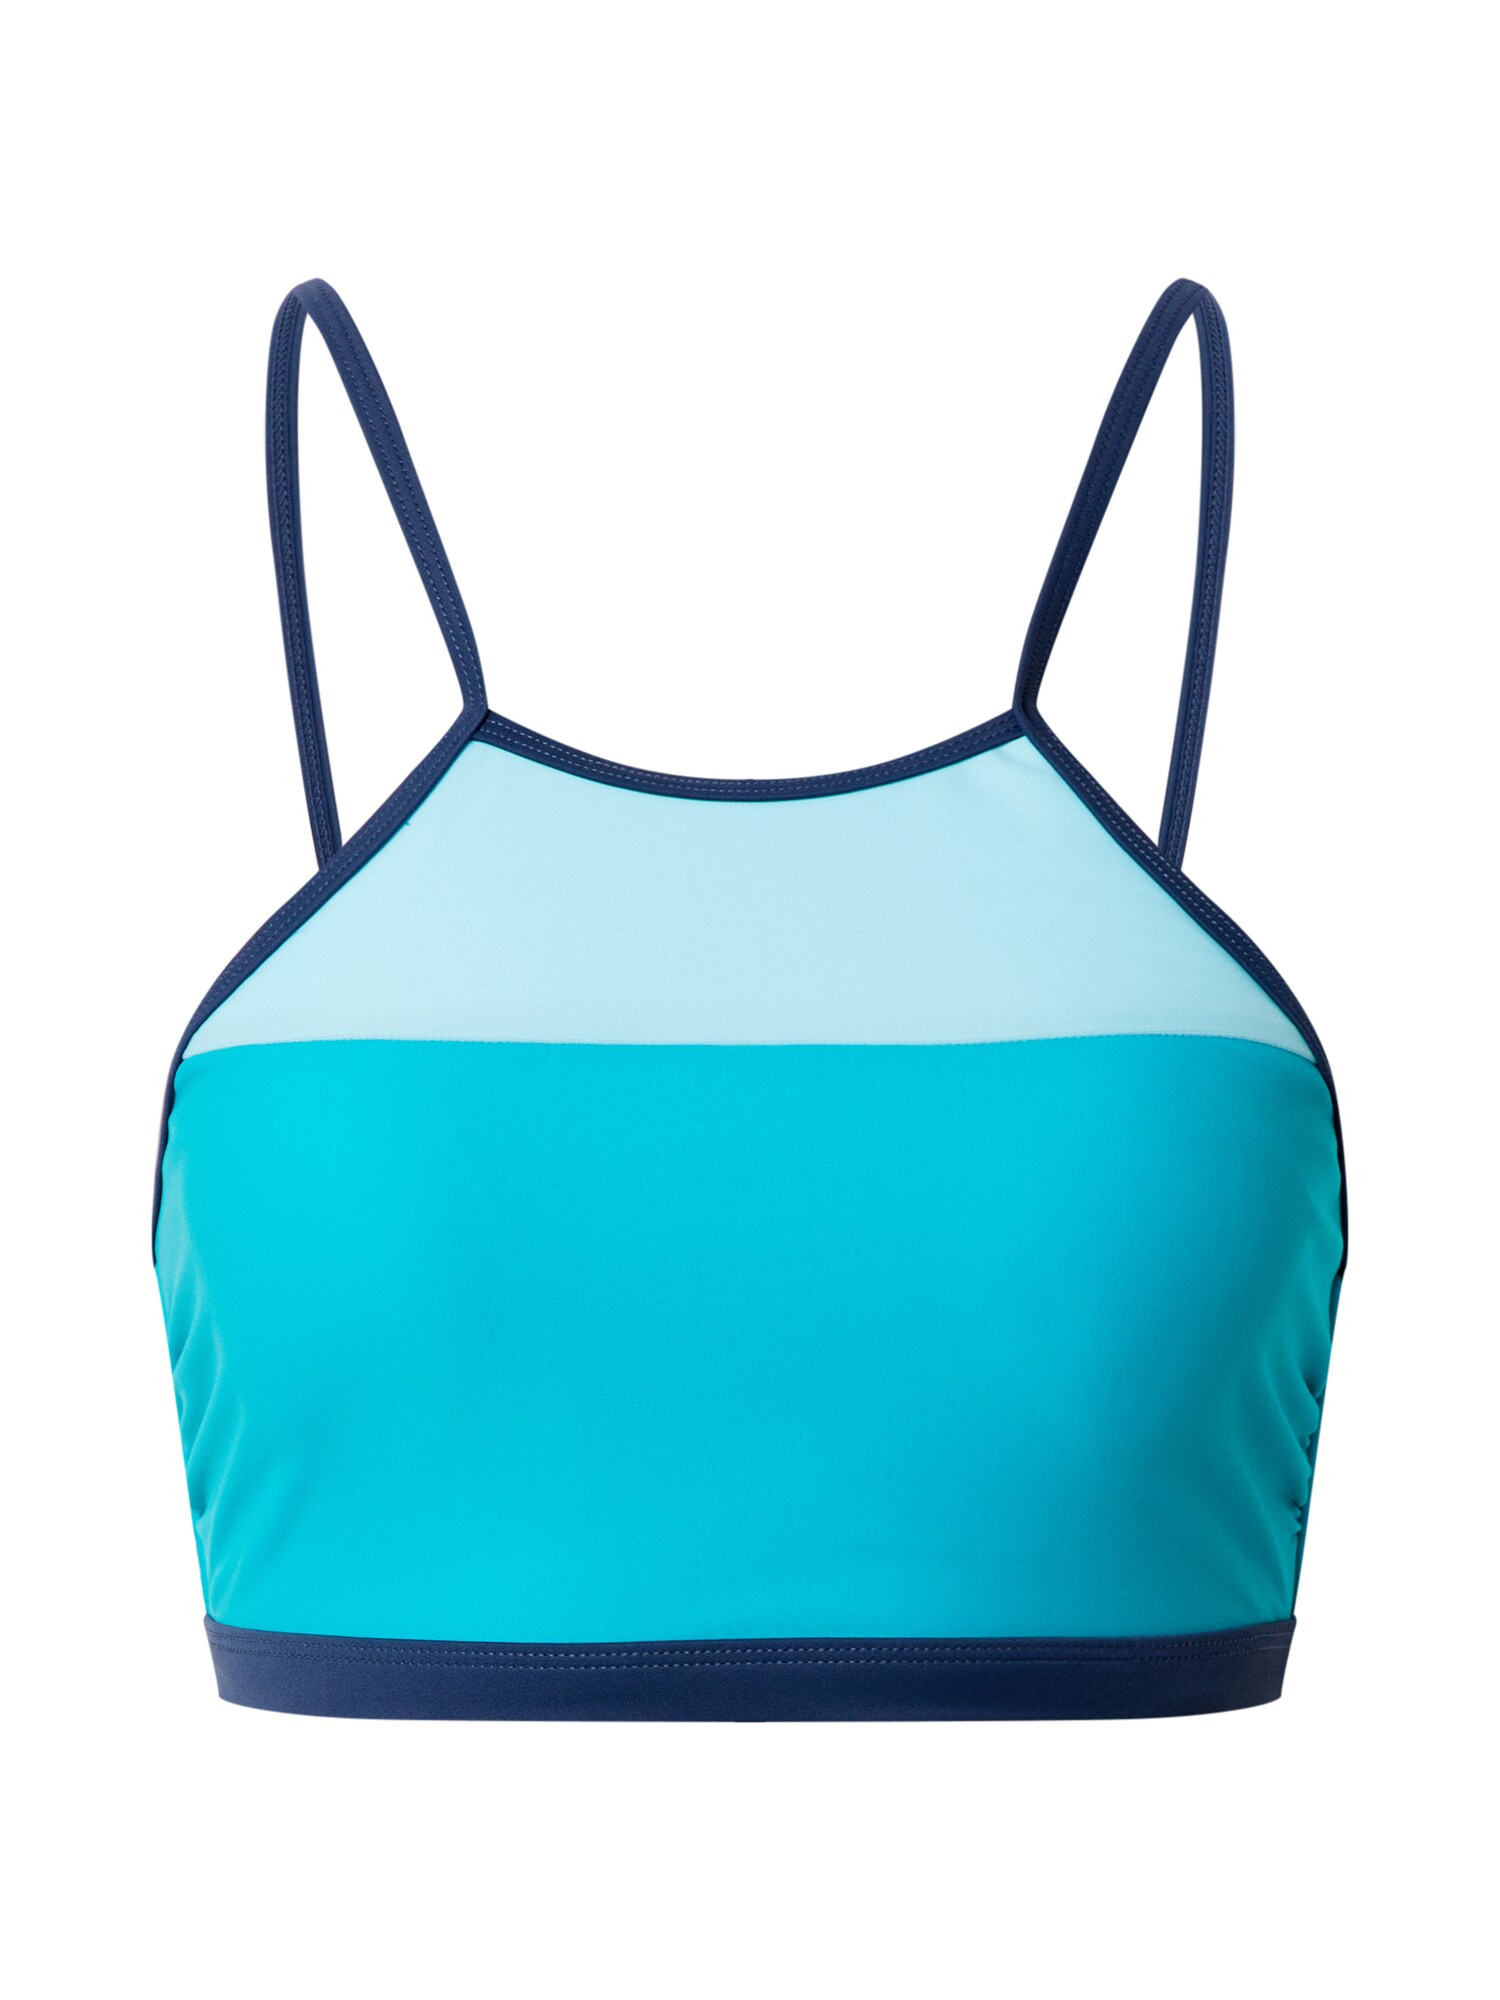 ESPRIT Bikinio viršutinė dalis 'ROSS BEACH'  turkio spalva / mėlyna